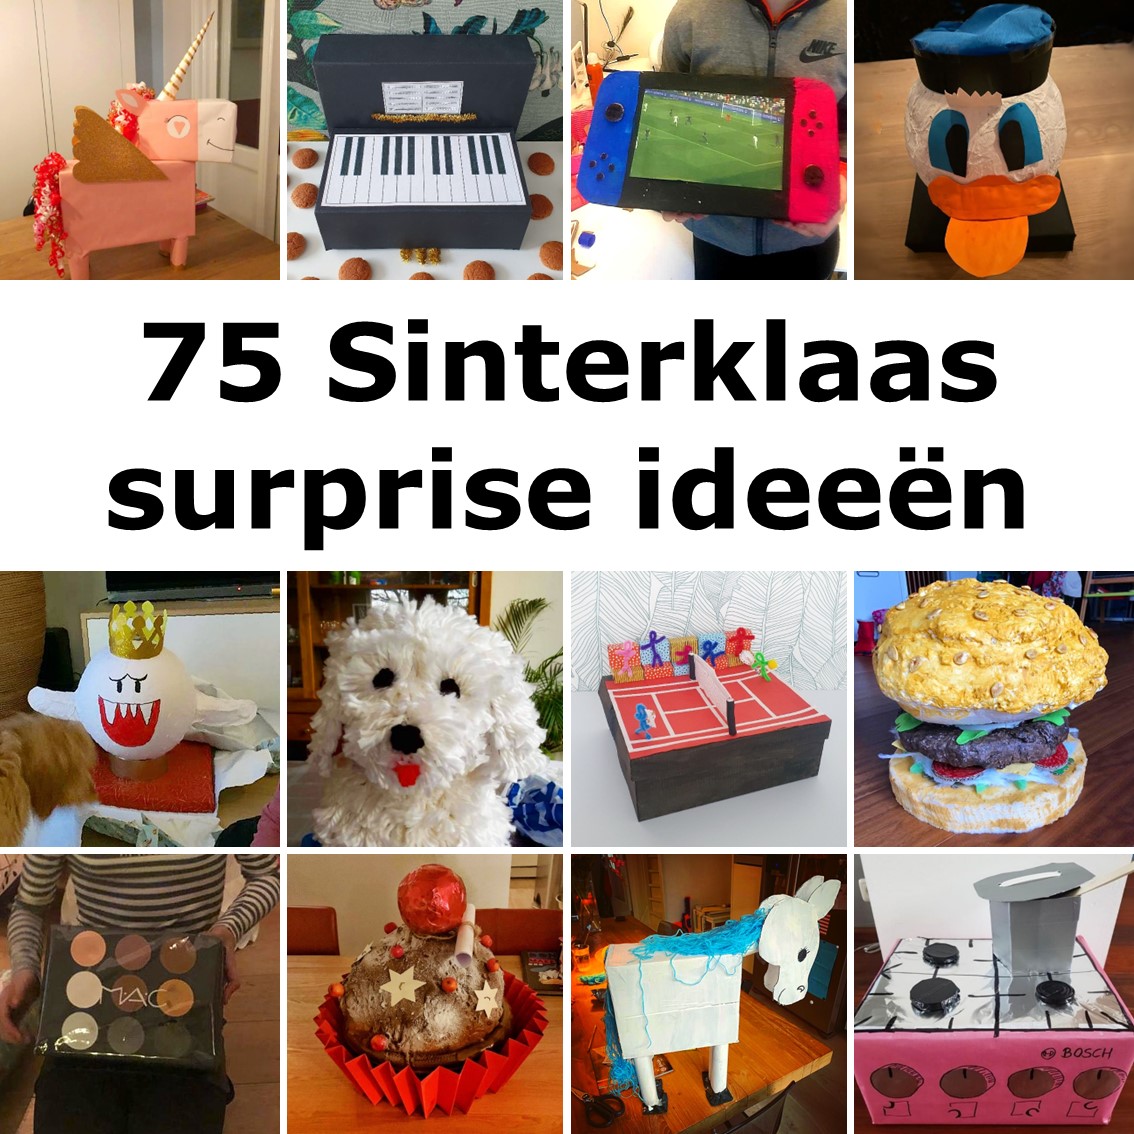 Beenmerg dichters drie Sinterklaas surprise knutselen: 75 leuke ideeën - Leuk met kids Leuk met  kids